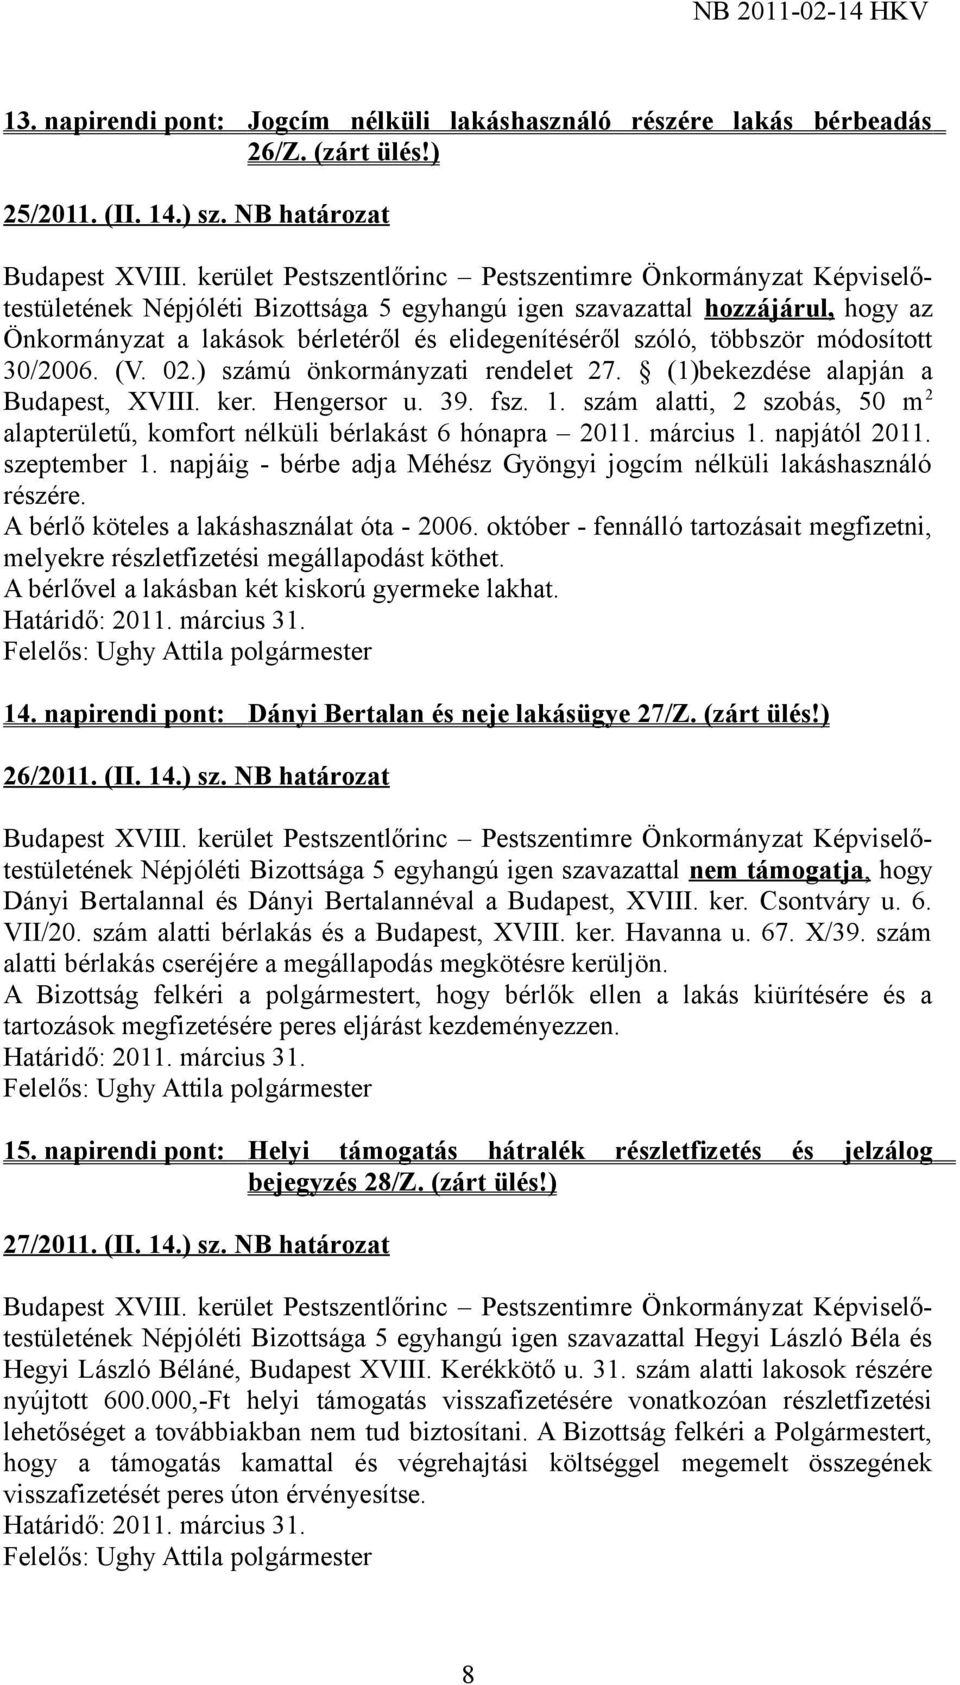 ) számú önkormányzati rendelet 27. (1)bekezdése alapján a Budapest, XVIII. ker. Hengersor u. 39. fsz. 1. szám alatti, 2 szobás, 50 m 2 alapterületű, komfort nélküli bérlakást 6 hónapra 2011.